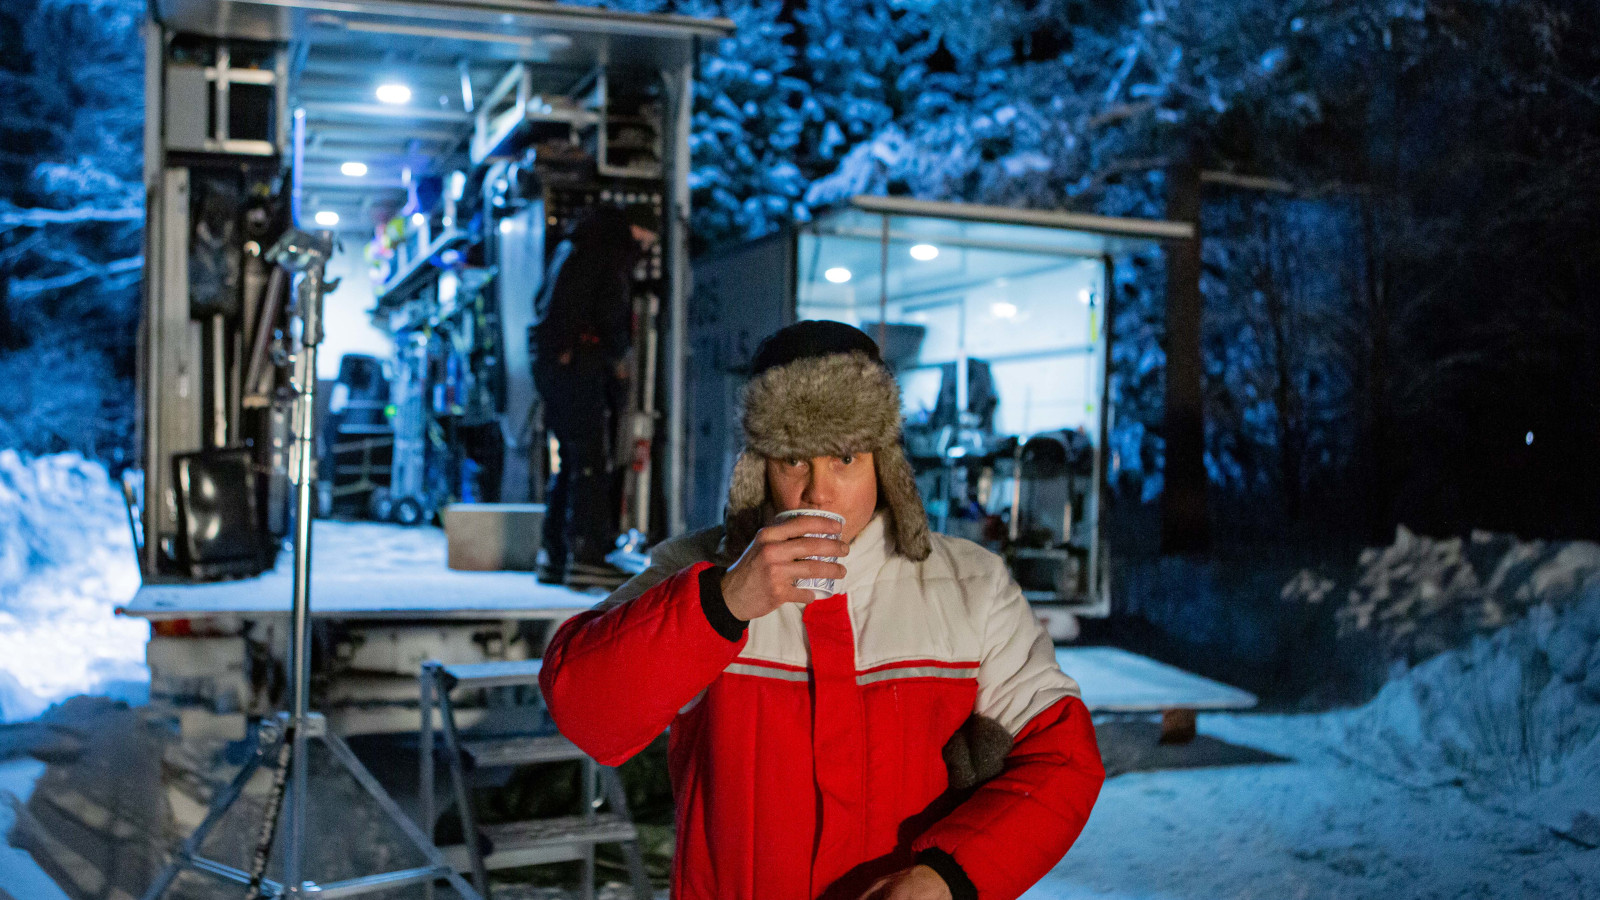 Kuvassa on Jarkko Lahti, joka esittää metsuria. Hän on juomassa pahvimukista kahvia.  Hänellä on puna-harmaa toppatakki päällään ja taustalla näkyy lumisessa metsässä 